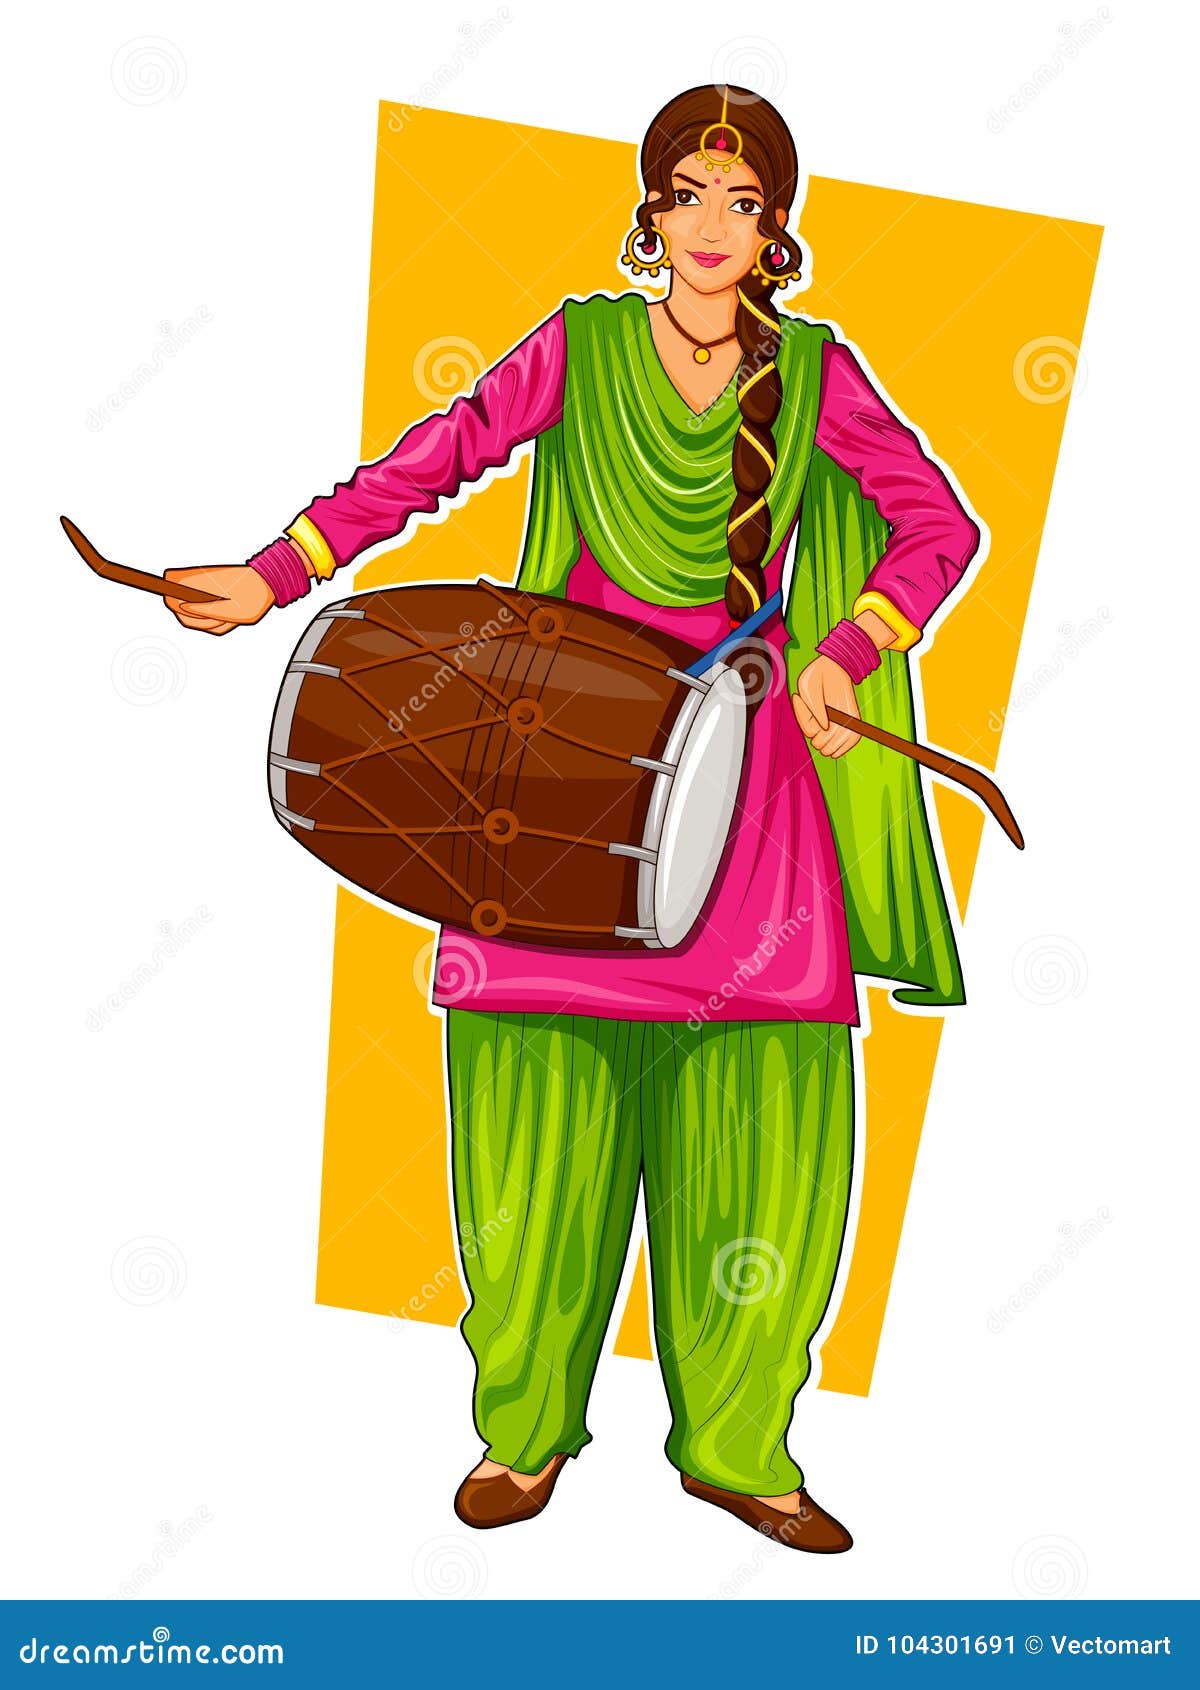 sikh punjabi sardar woman playing dhol and dancing bhangra on holiday like lohri or vaisakhi